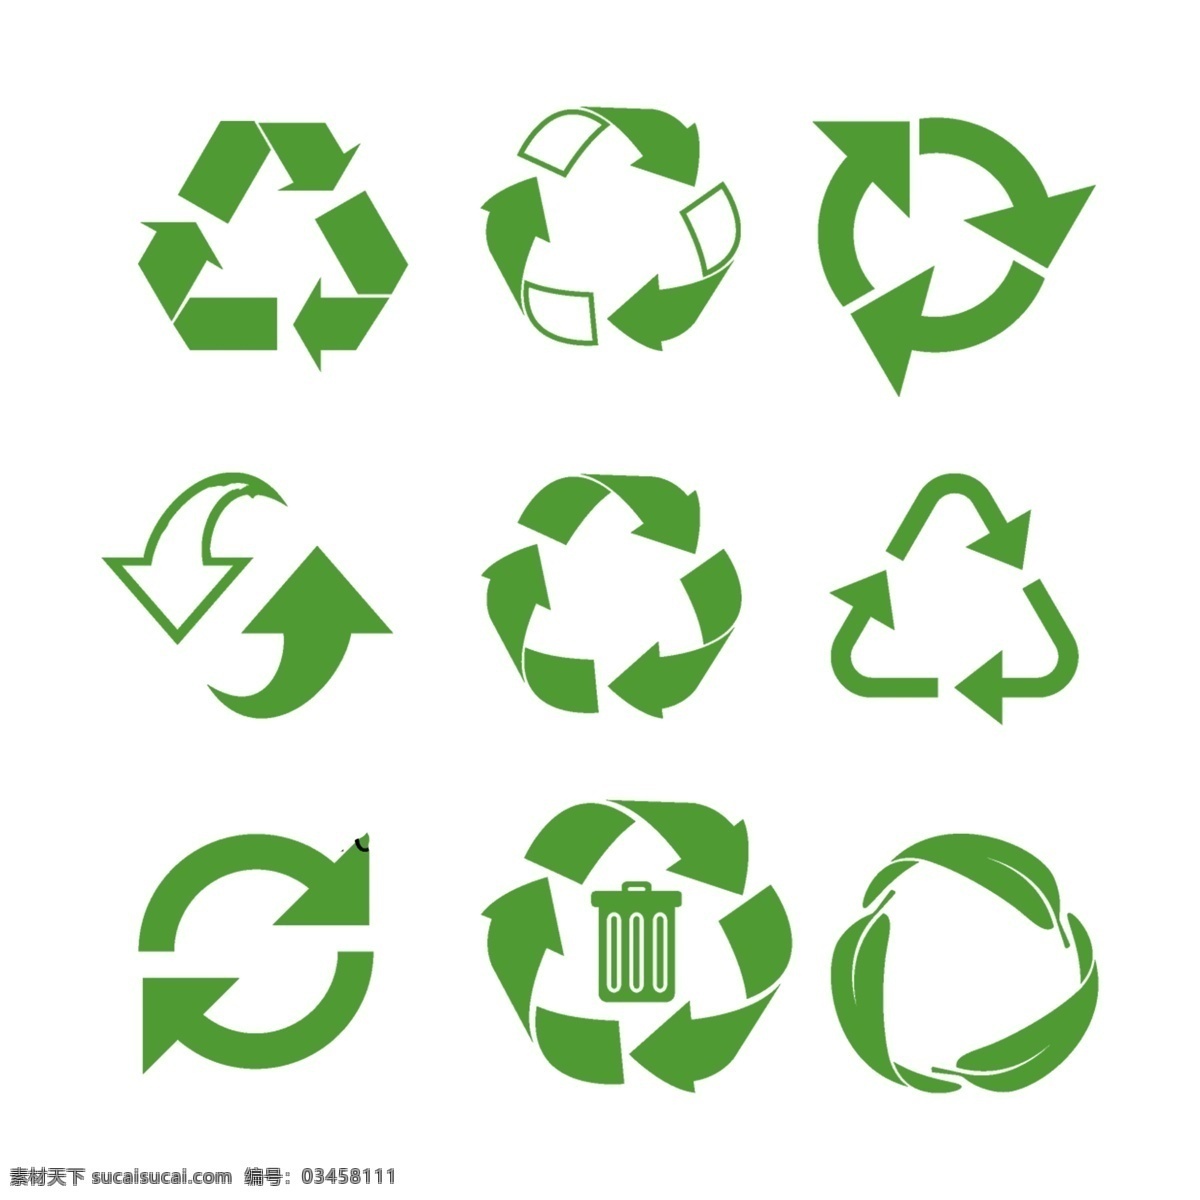 循环标识图片 循环标志 循环logo 可循环使用 循环使用 环保标志 可循 环 logo 公共标识 标志图标 公共标识标志